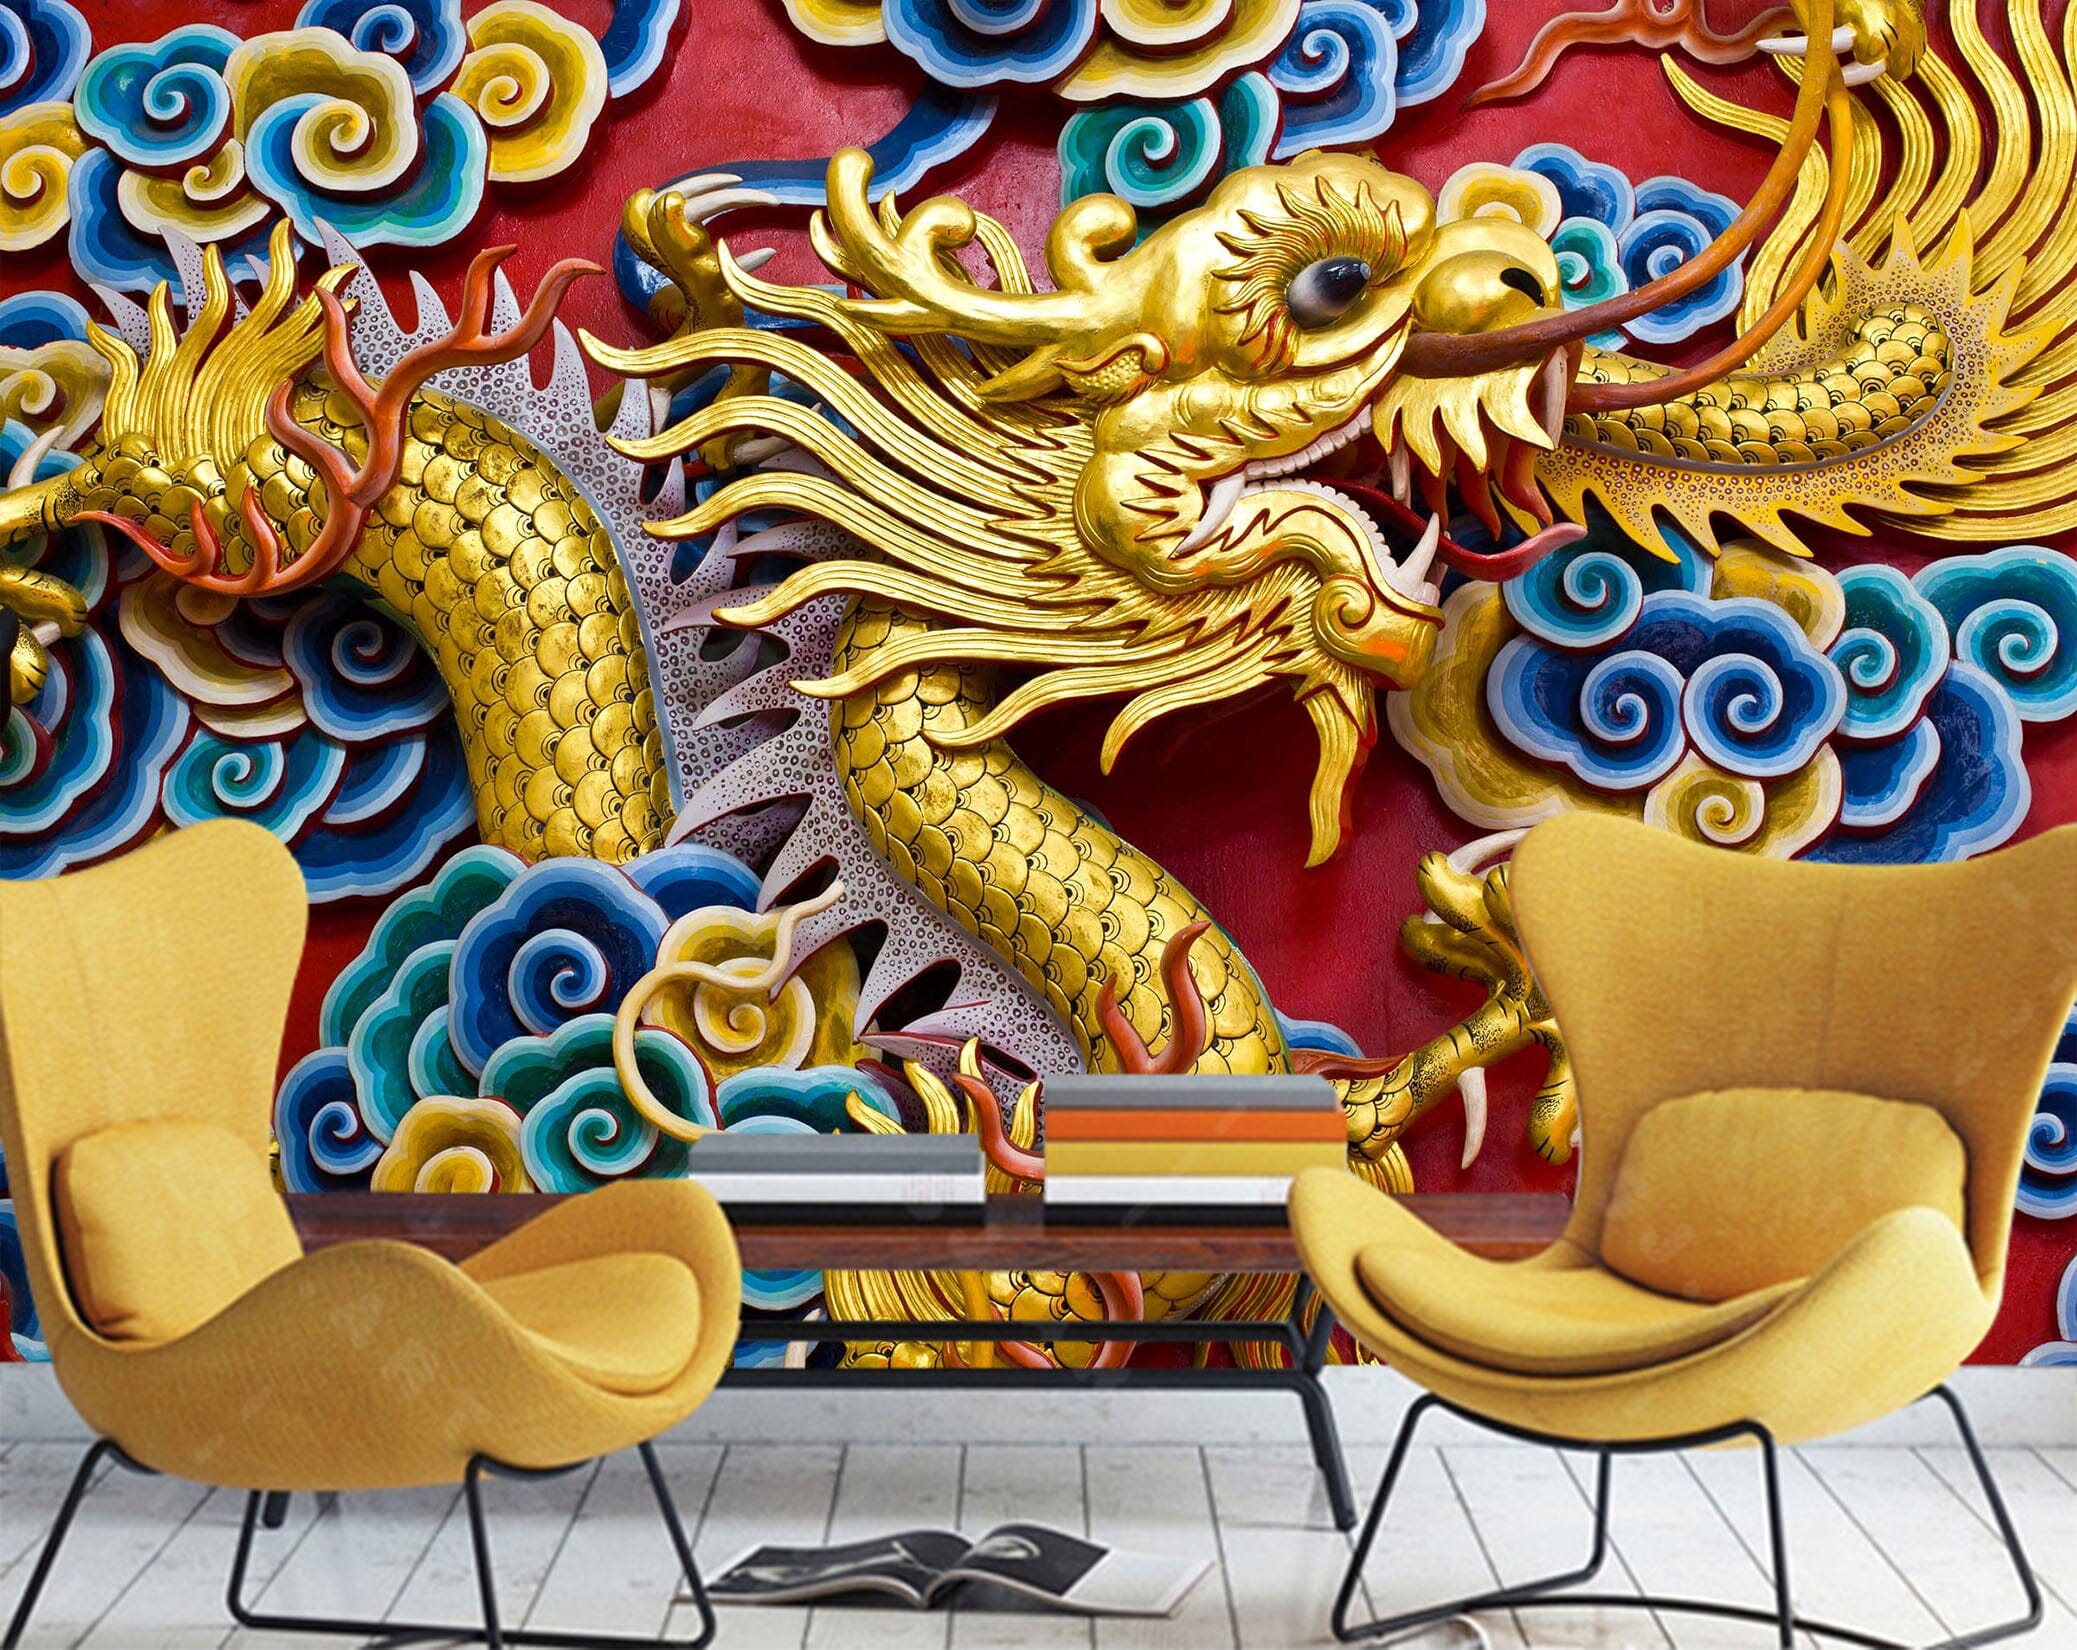 3D Golden Dragon Carving 1524 Wall Murals Wallpaper AJ Wallpaper 2 